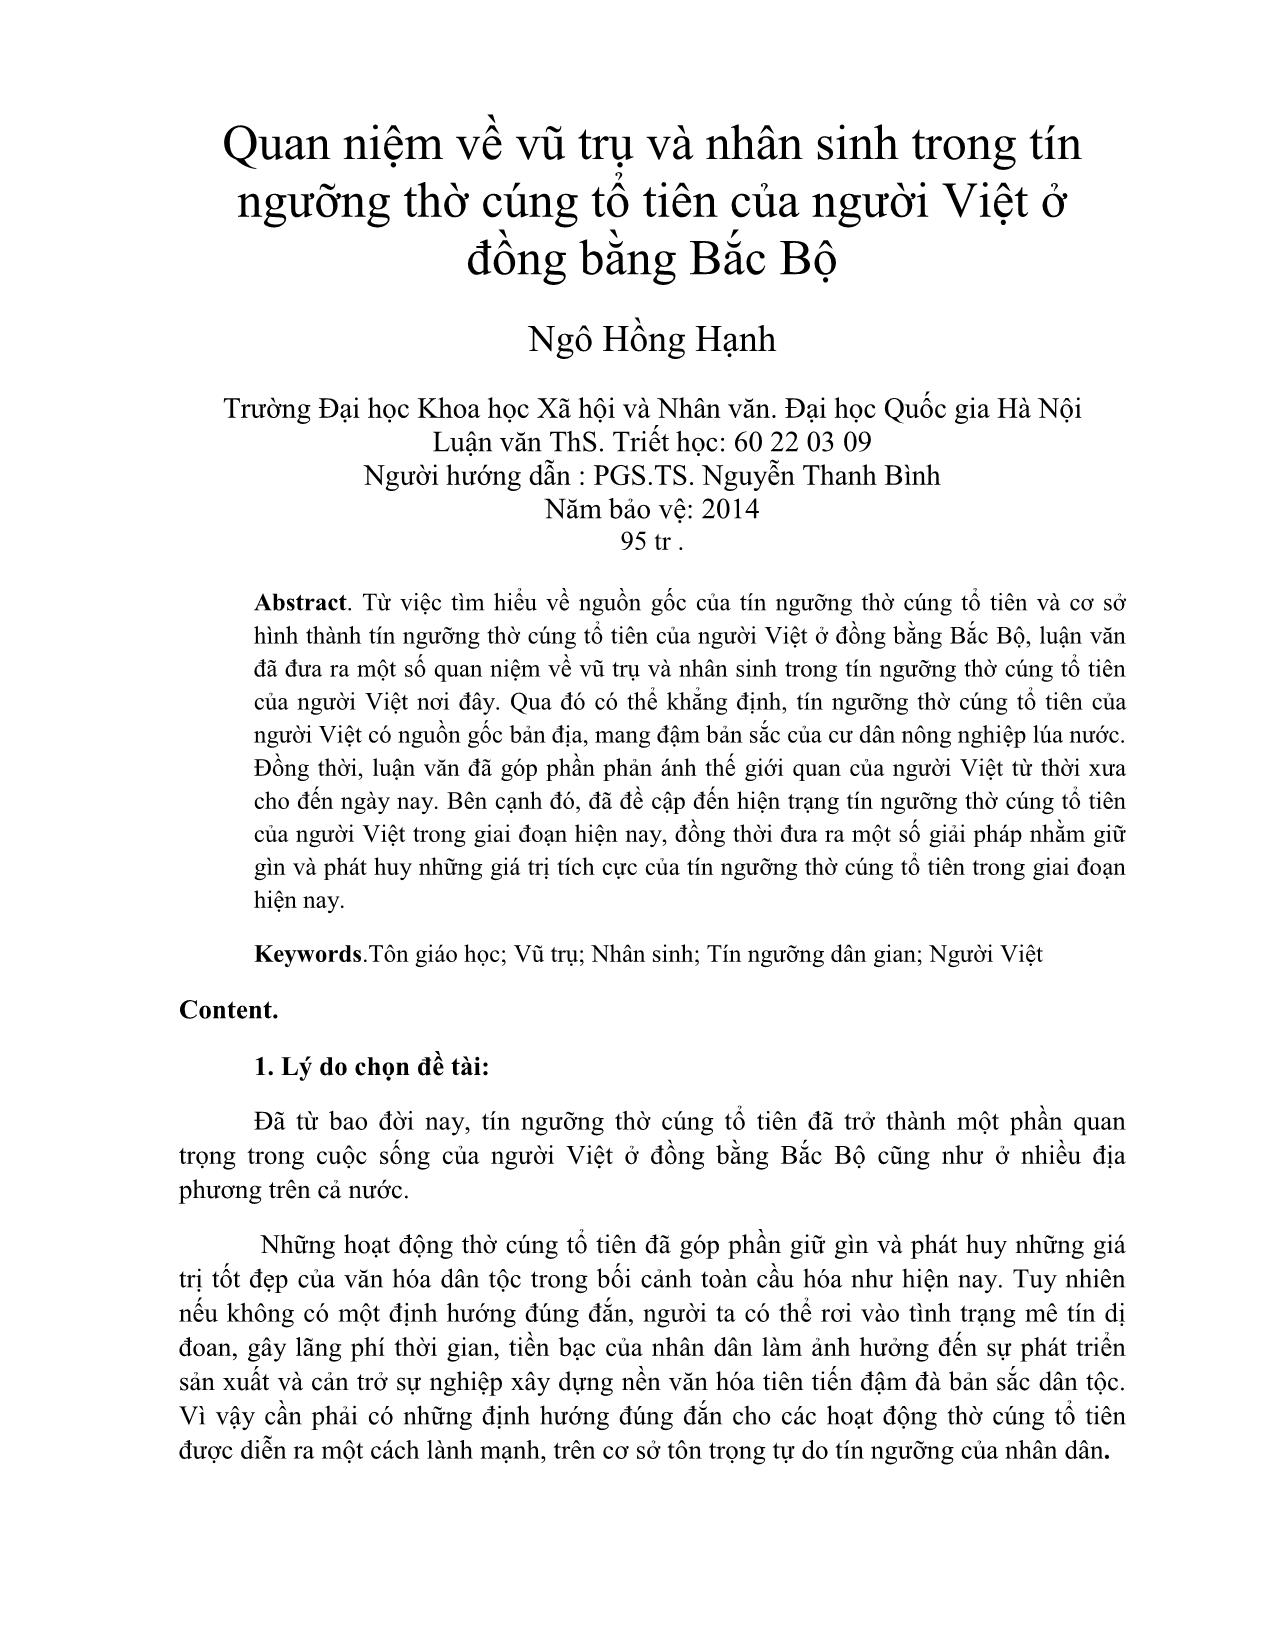 Quan niệm về vũ trụ và nhân sinh trong tín ngưỡng thờ cúng tổ tiên của người Việt ở đồng bằng Bắc Bộ trang 1